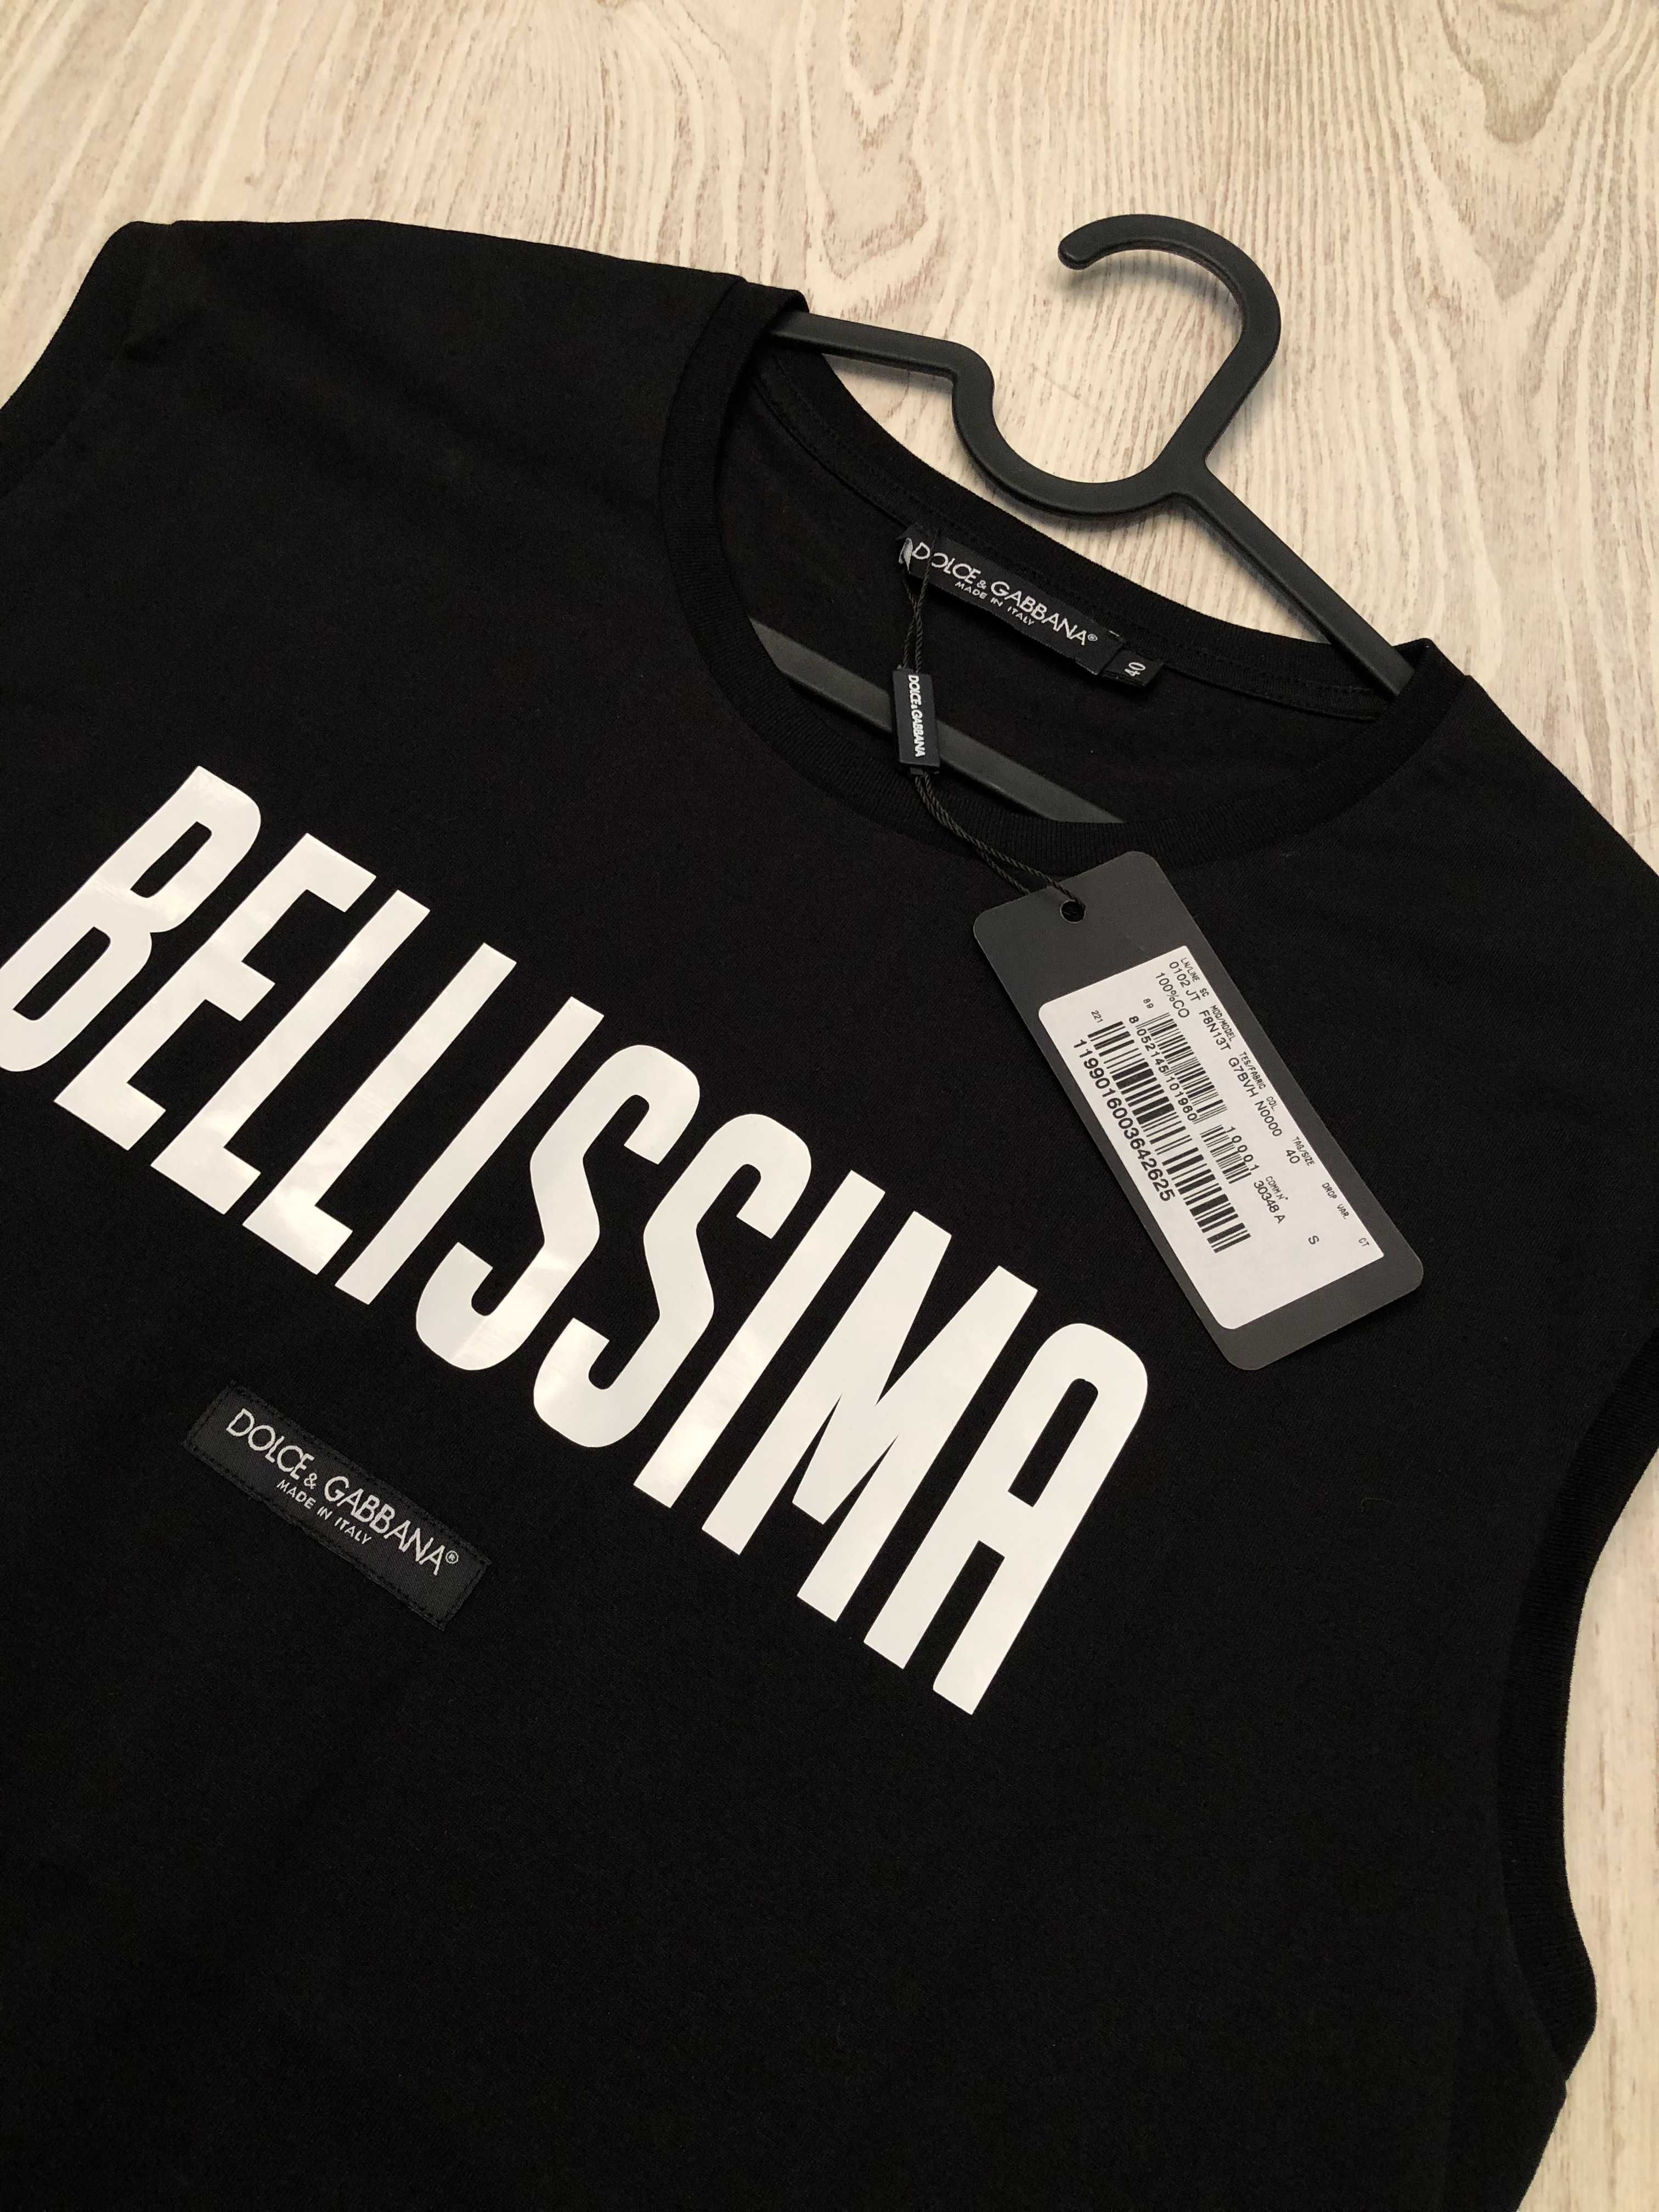 Dolce Gabbana tricou S-M-L dama, autentIc, retail price 295 euro